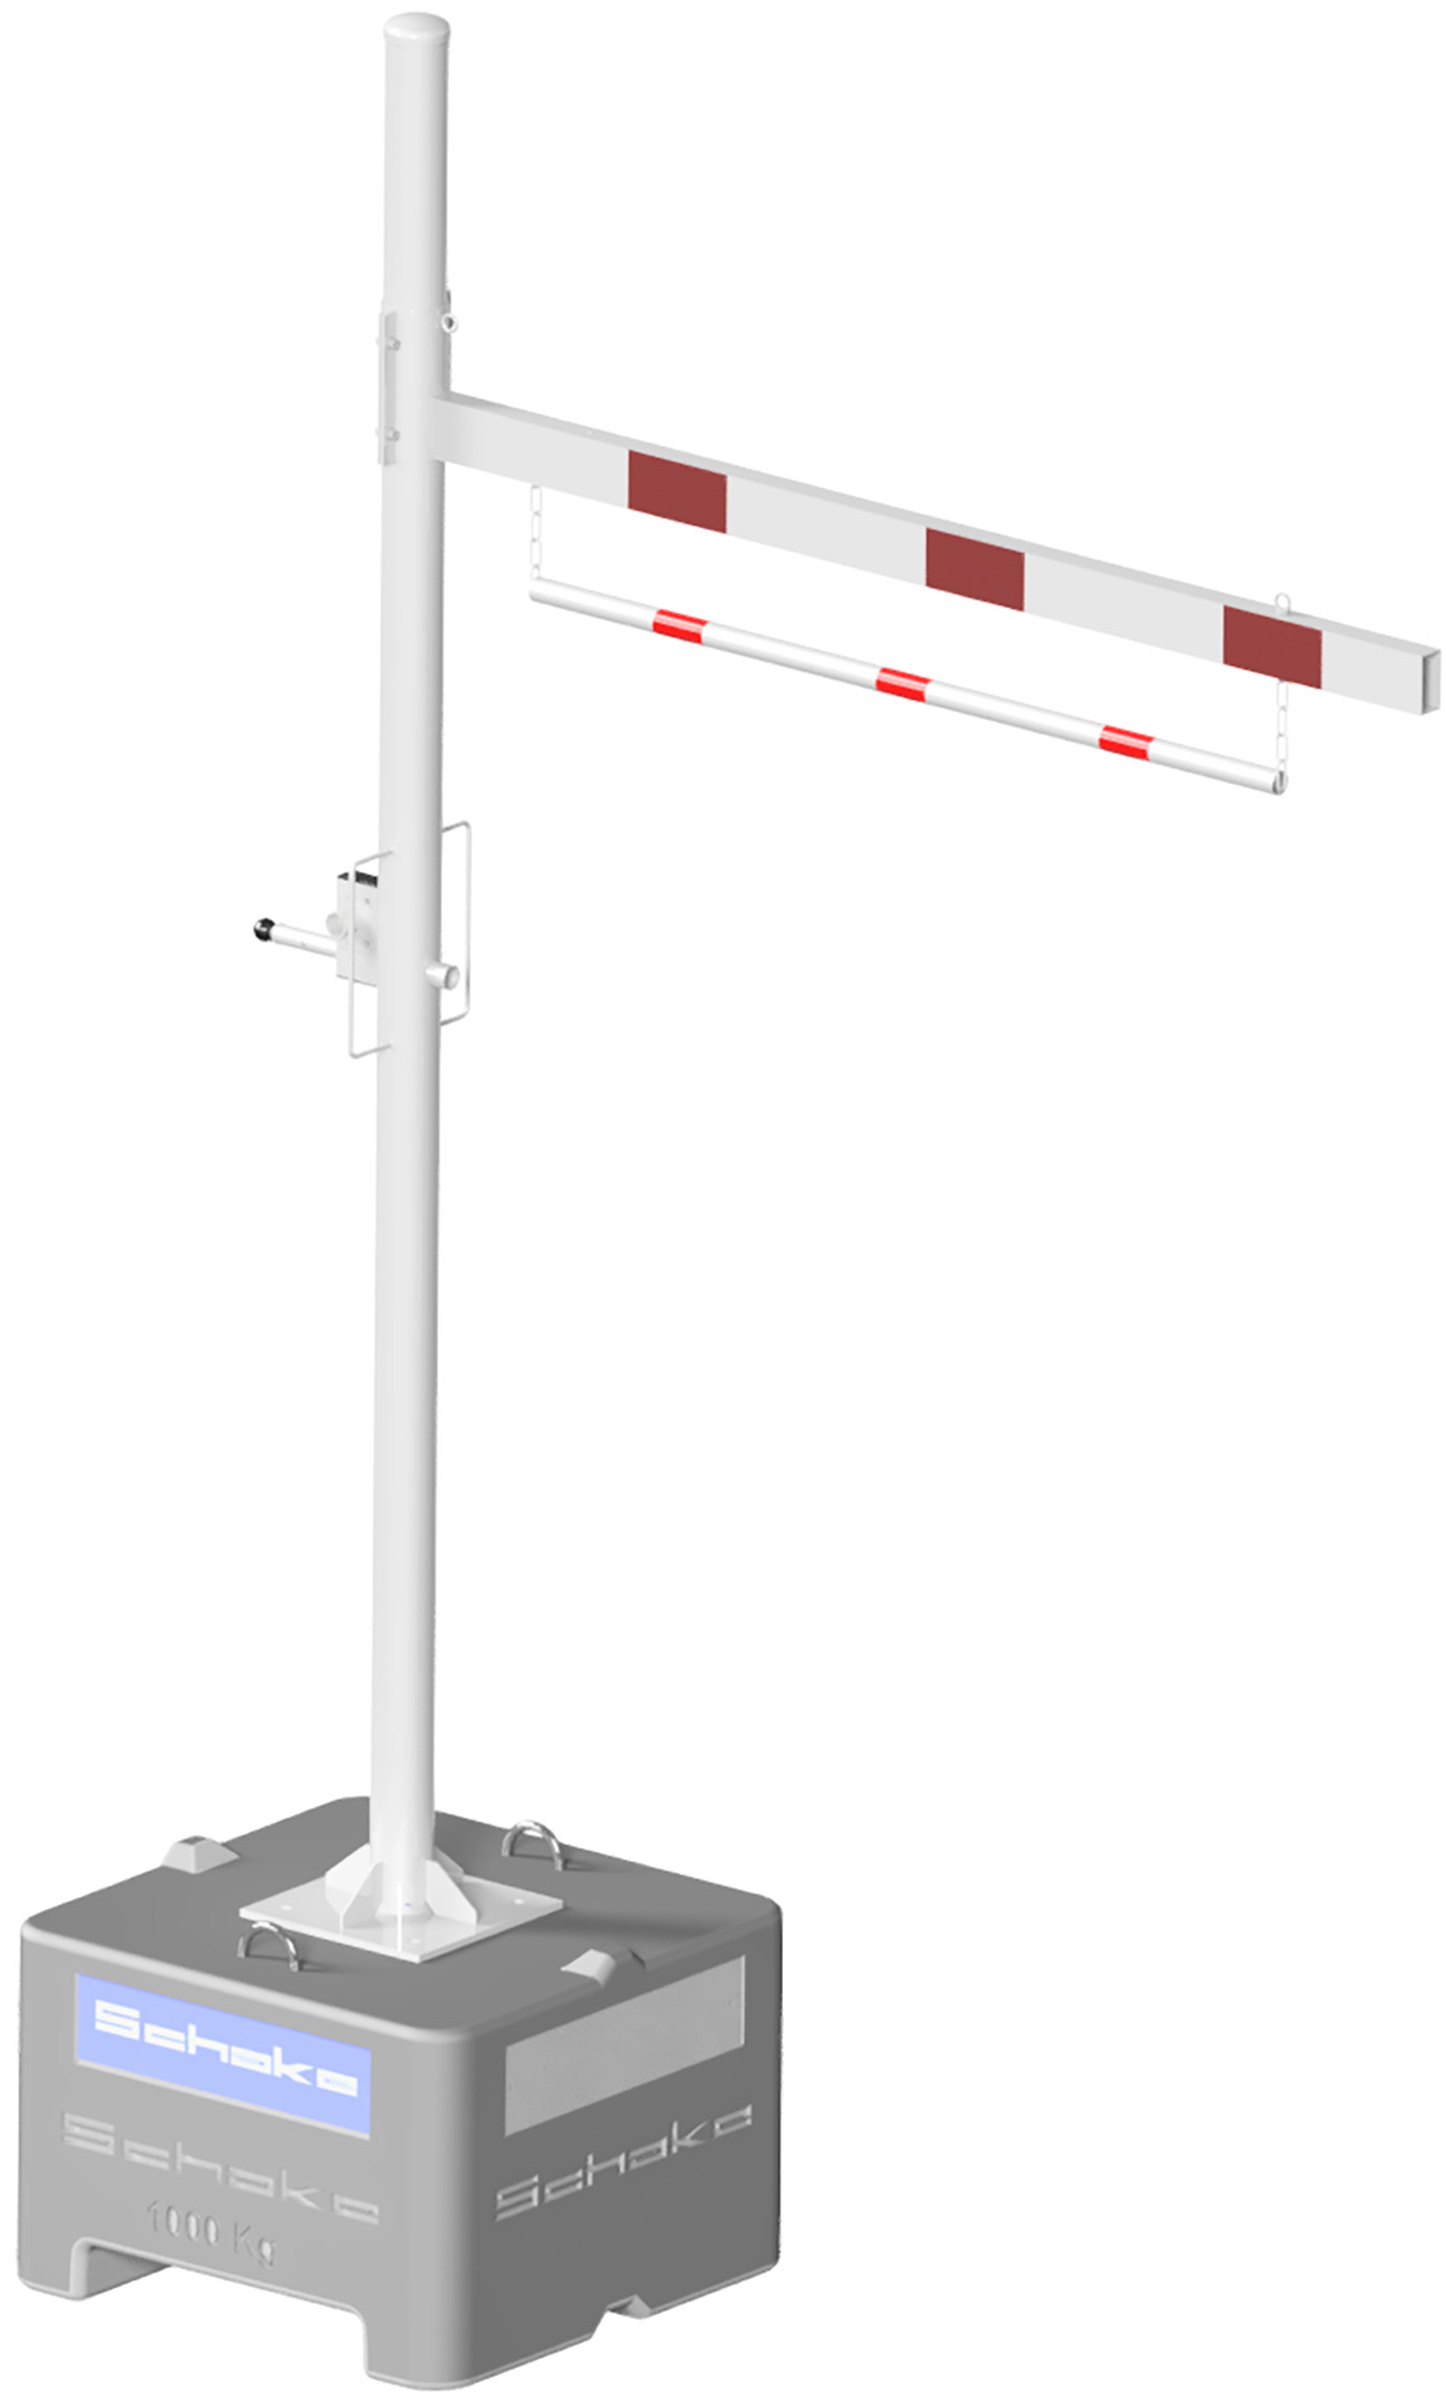 Schake Höhenbegrenzer variabel Mobil - 1 Drehpfosten Stahl Ø 102 mm weiß | rot Barriere mobil mit Dübelbefestigung für Beton-Aufstellvorrichtung und verstellbarer Durchfahrtshöhe - verschiedene Ausführungen (SK-C-417.201VBPM) Bild-02